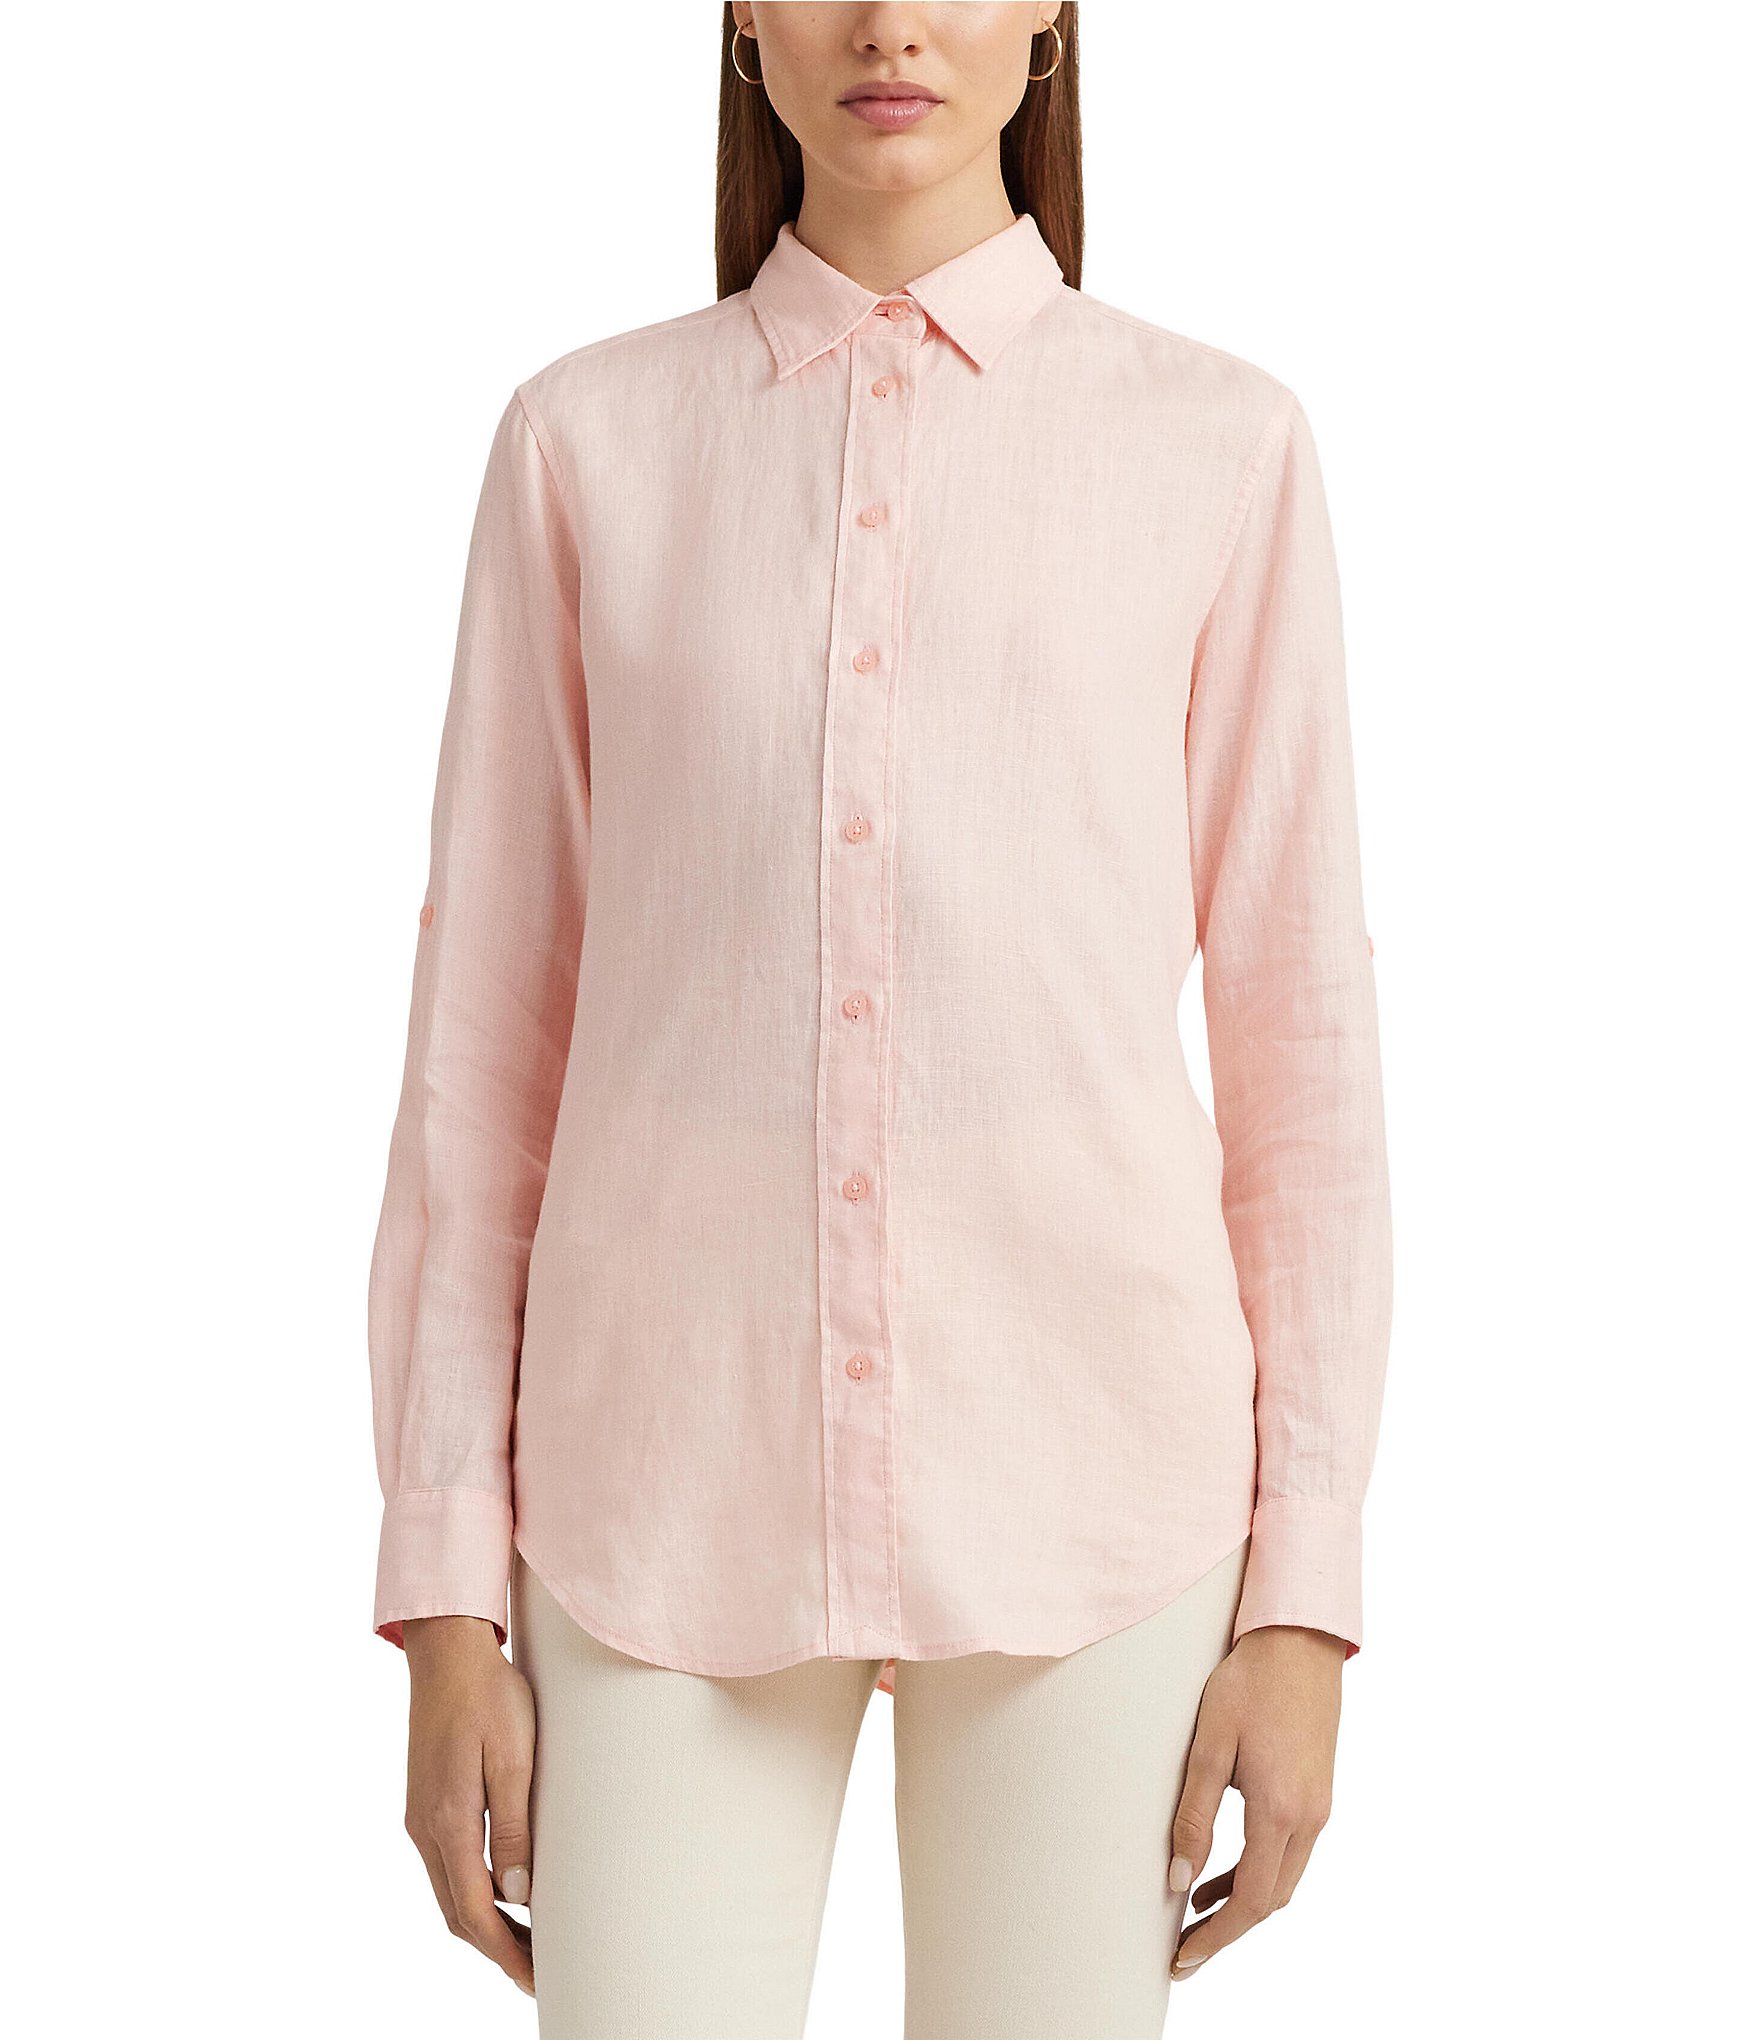 Lauren Ralph Lauren Women's Roll Tab Sleeve Linen Shirt, Pink, Medium